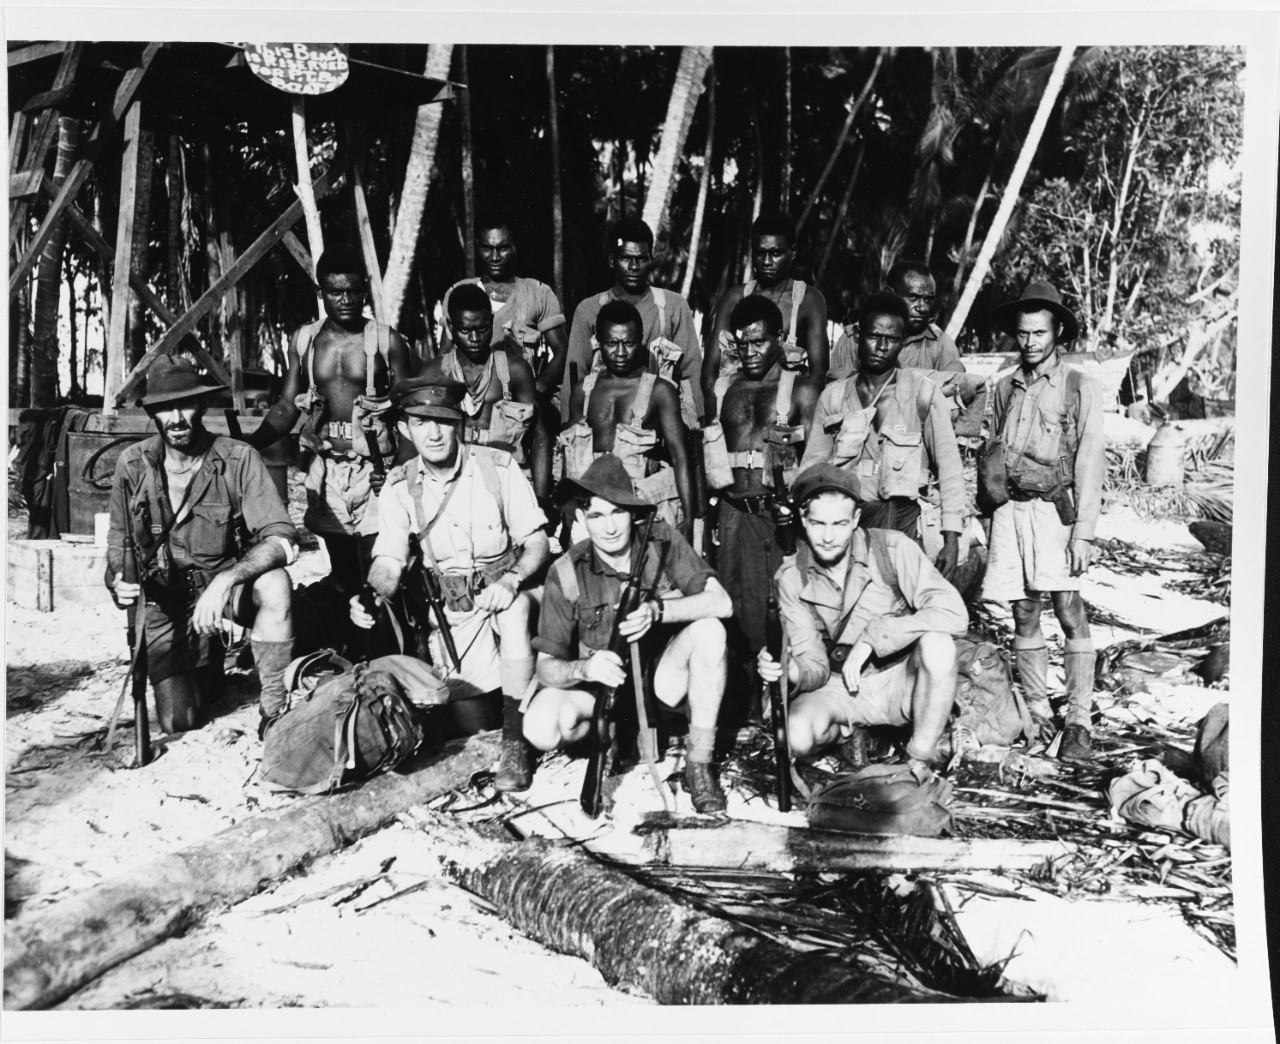 Australian Coast Watchers on Bougainville, November 29, 1943